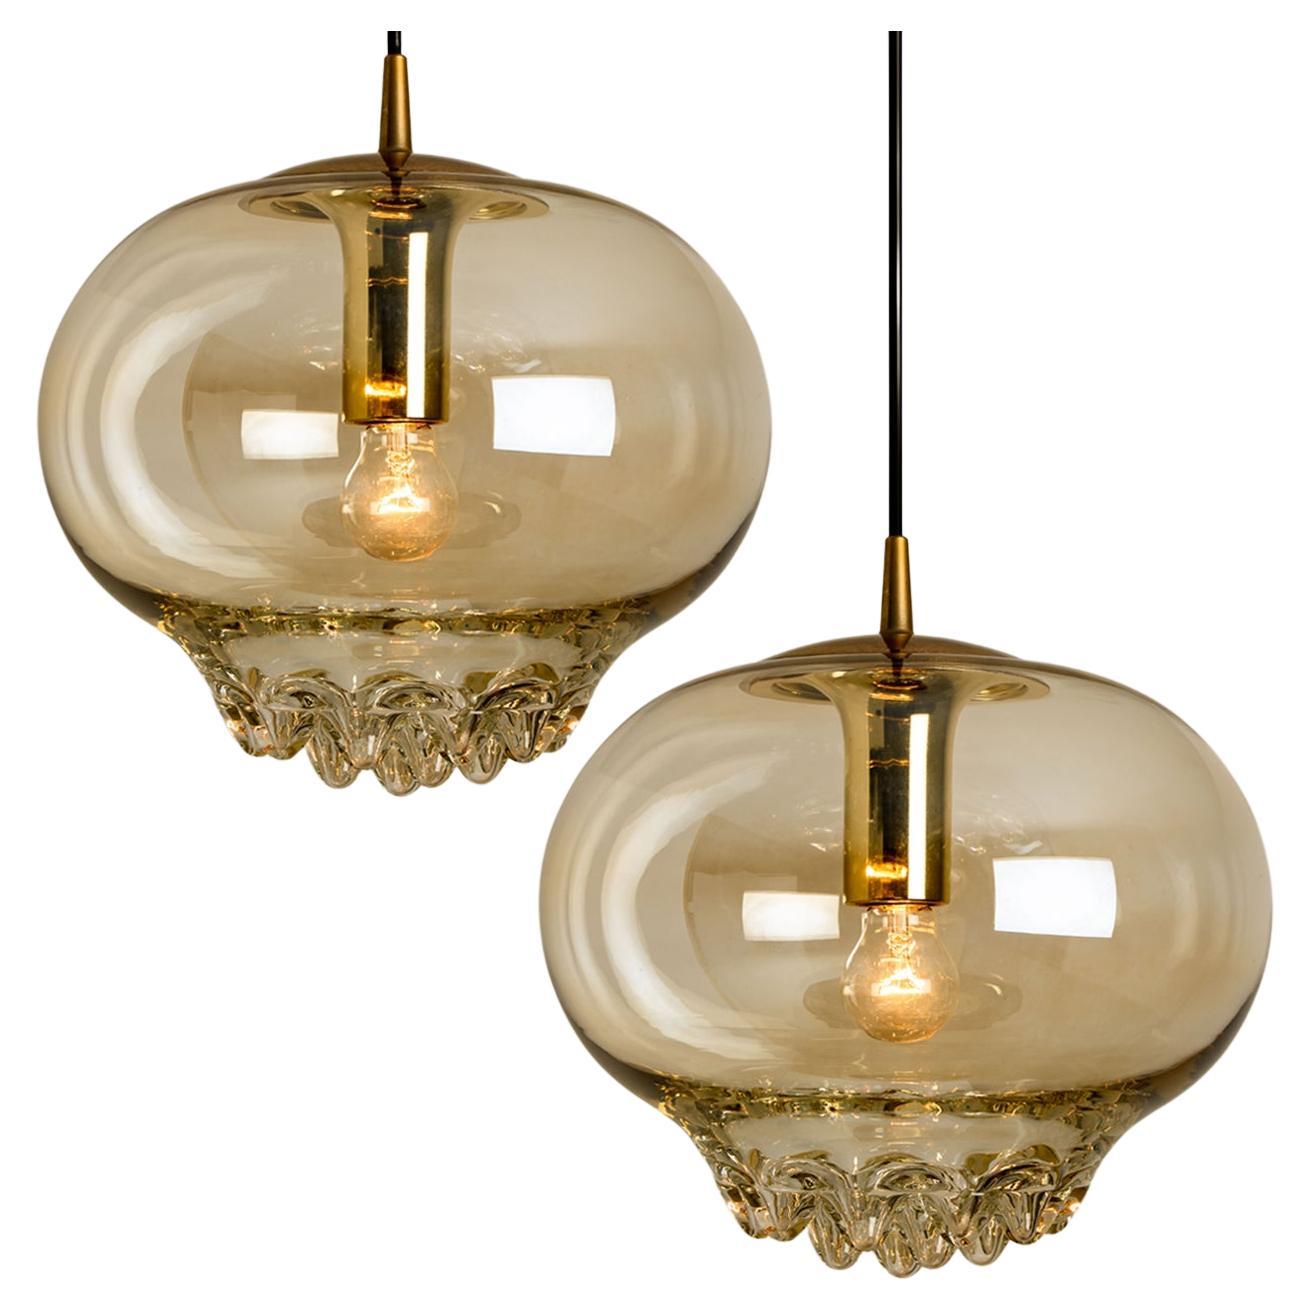 Paire de lampes suspendues dorées/brunes fumées, années 1960 par Peill et Putzler. Une forme unique et un merveilleux effet lumineux grâce à de jolis éléments en verre. Pièces de haute qualité. Illumine magnifiquement. Un véritable artisanat du 20e